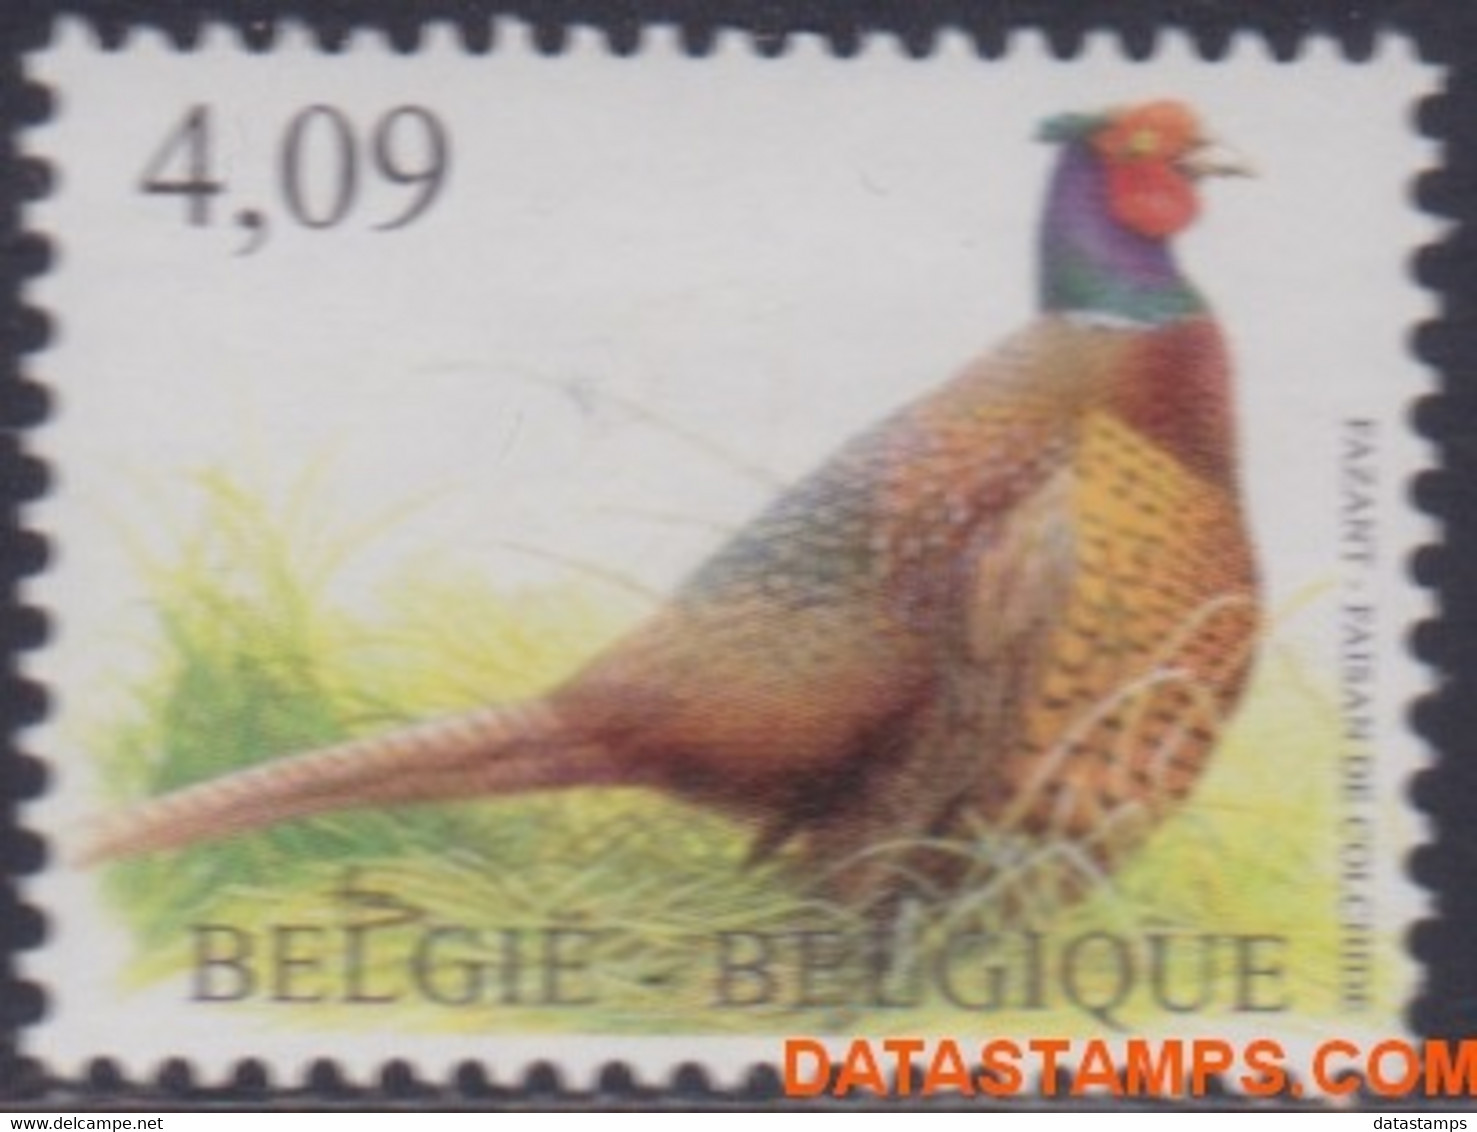 België 2010 - Mi:4089, Yv:4027, OBP:4046, Stamp - XX - Birds Pheasant - 1985-.. Vögel (Buzin)